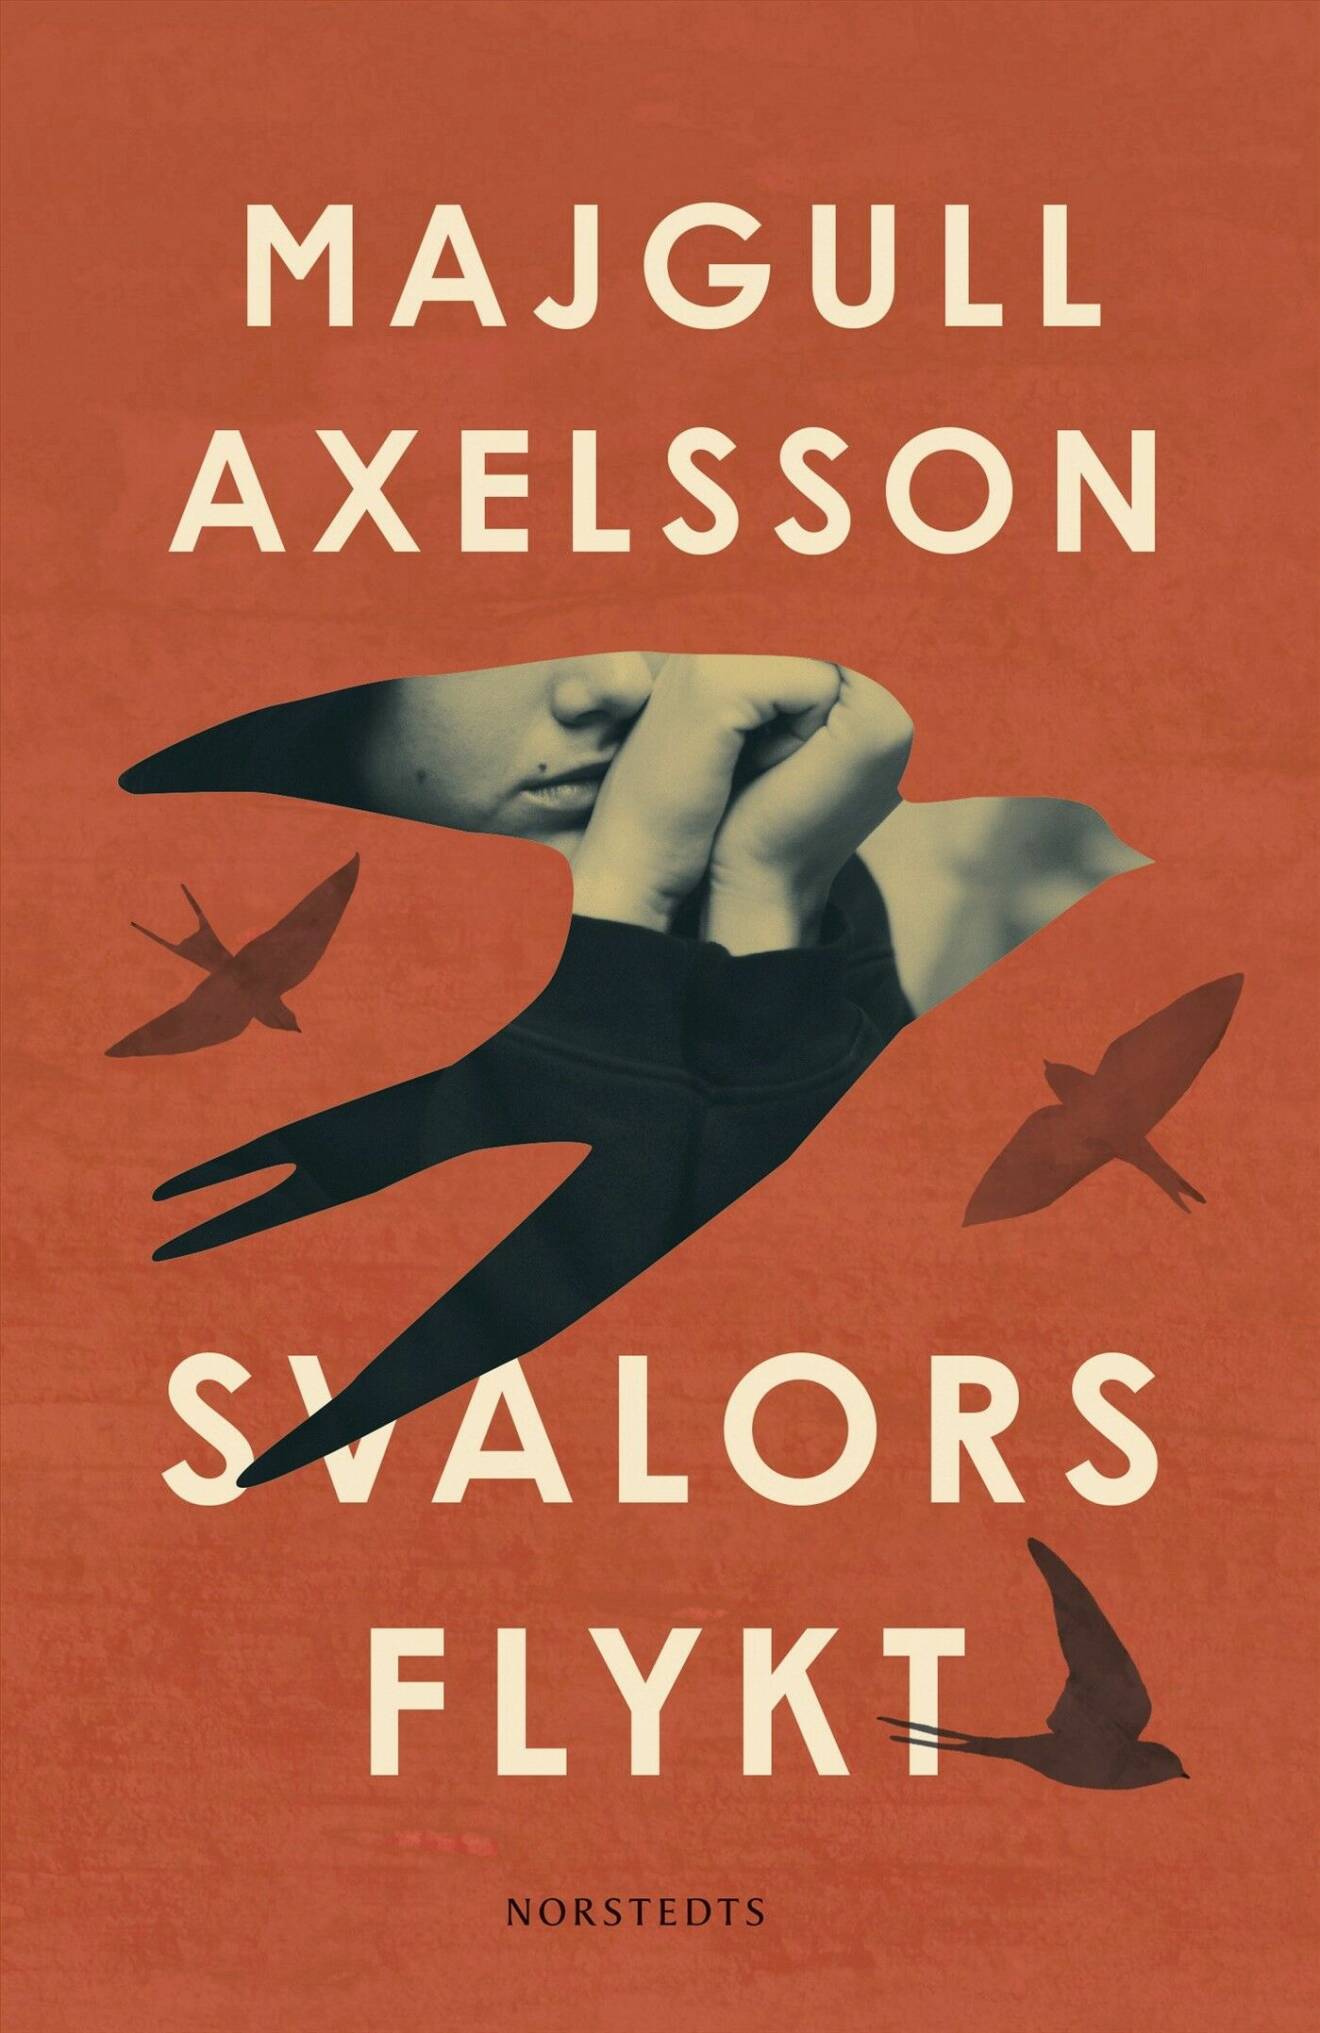 Majgull Axelssons nya roman Svalors flykt